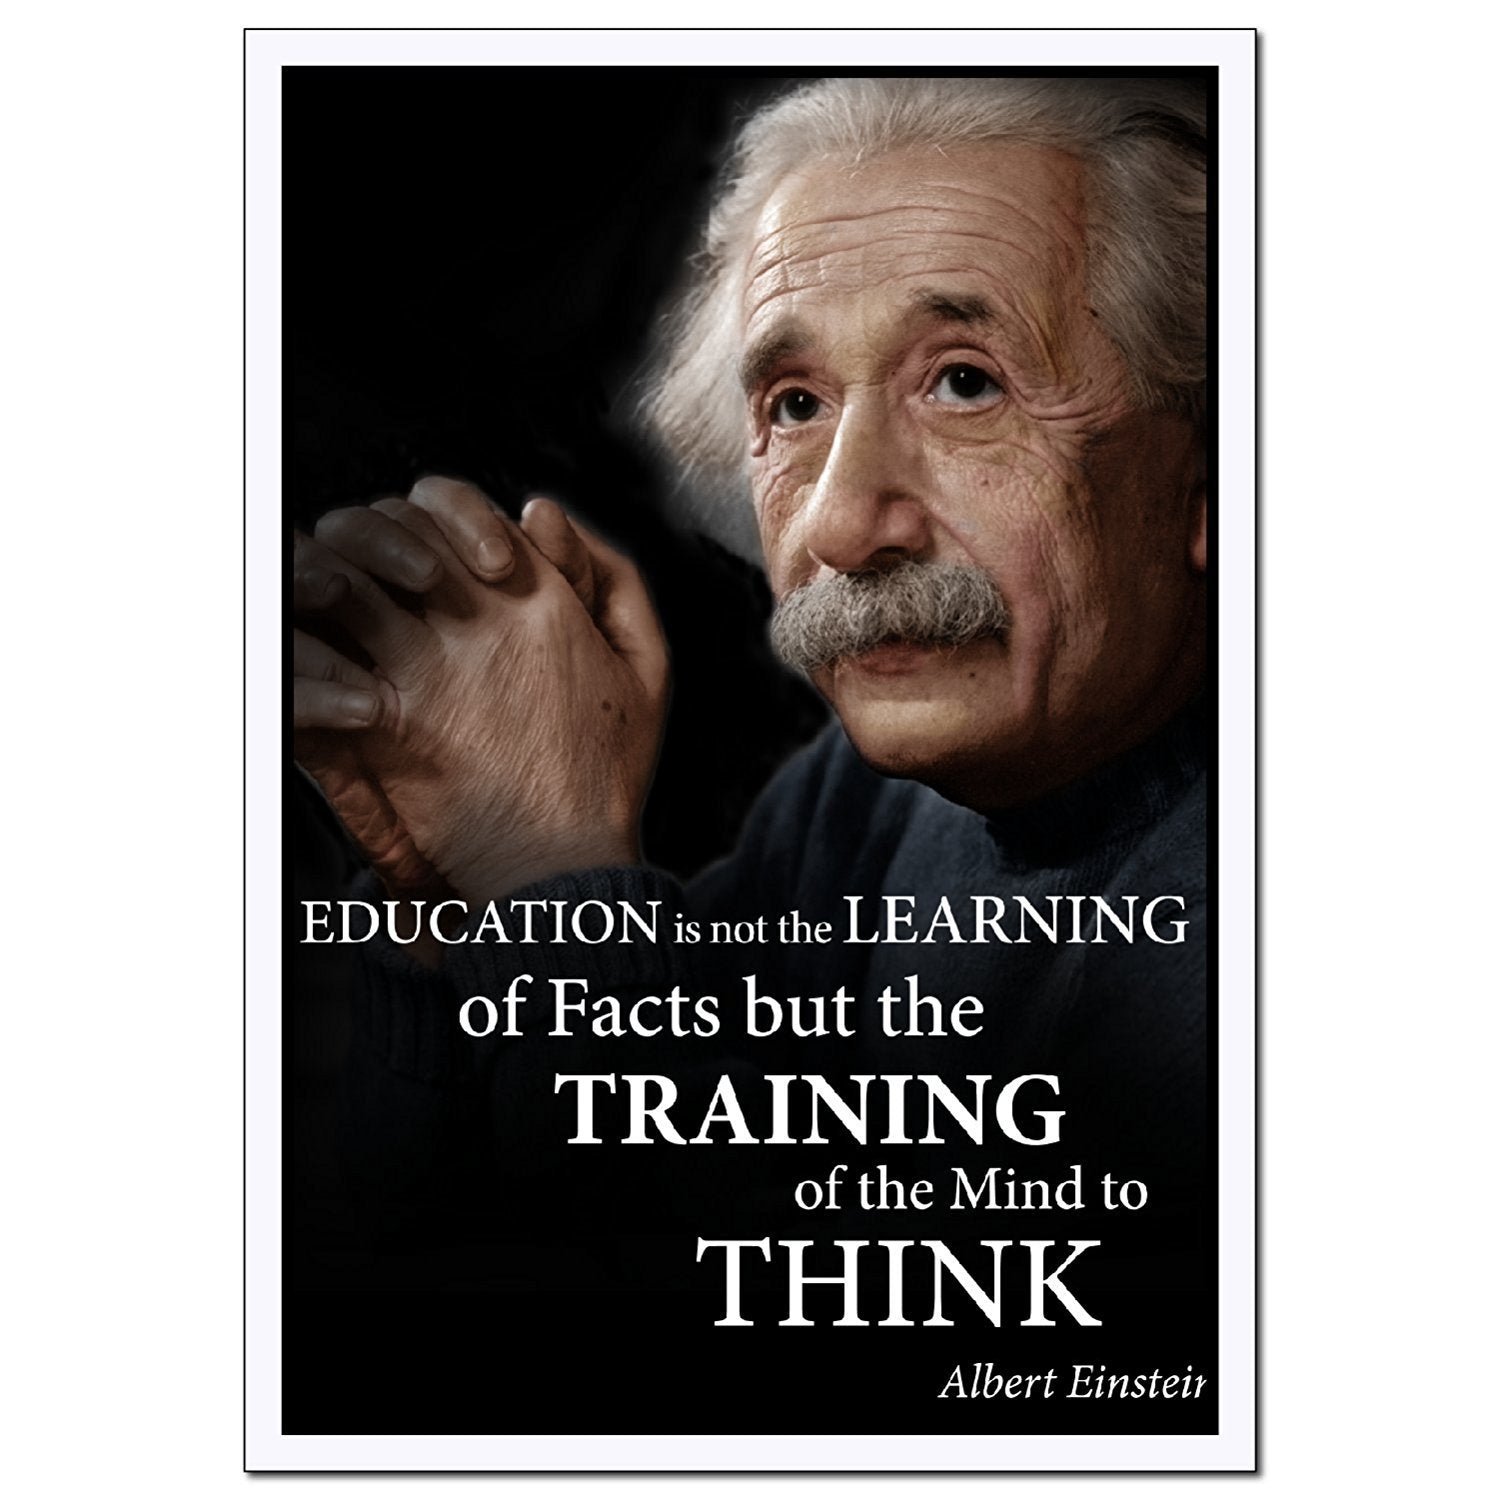 Training of the mind to think Albert Einstein classroom